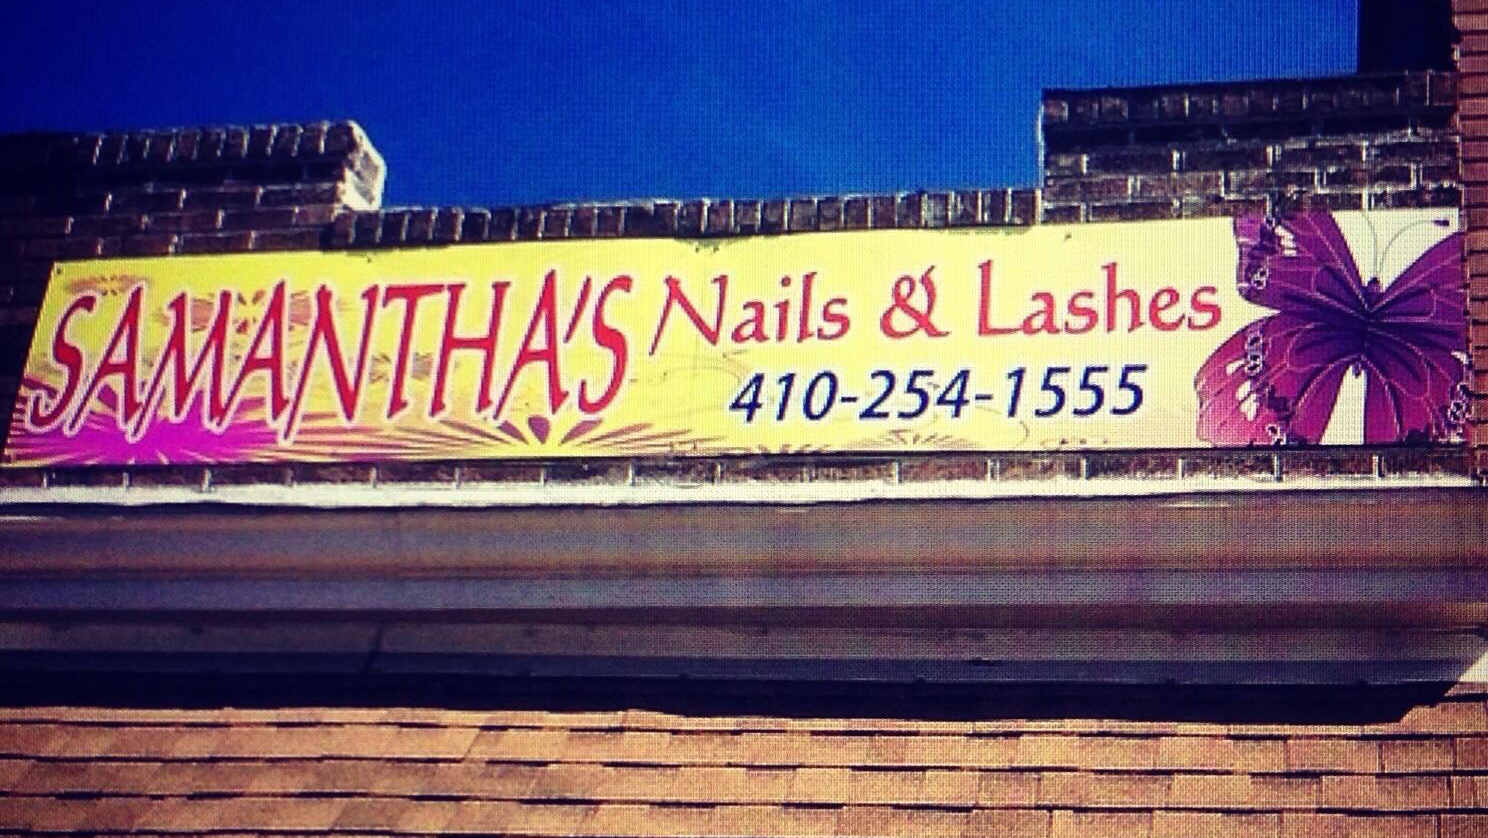 Samantha's Nails, Brows, & Lashes